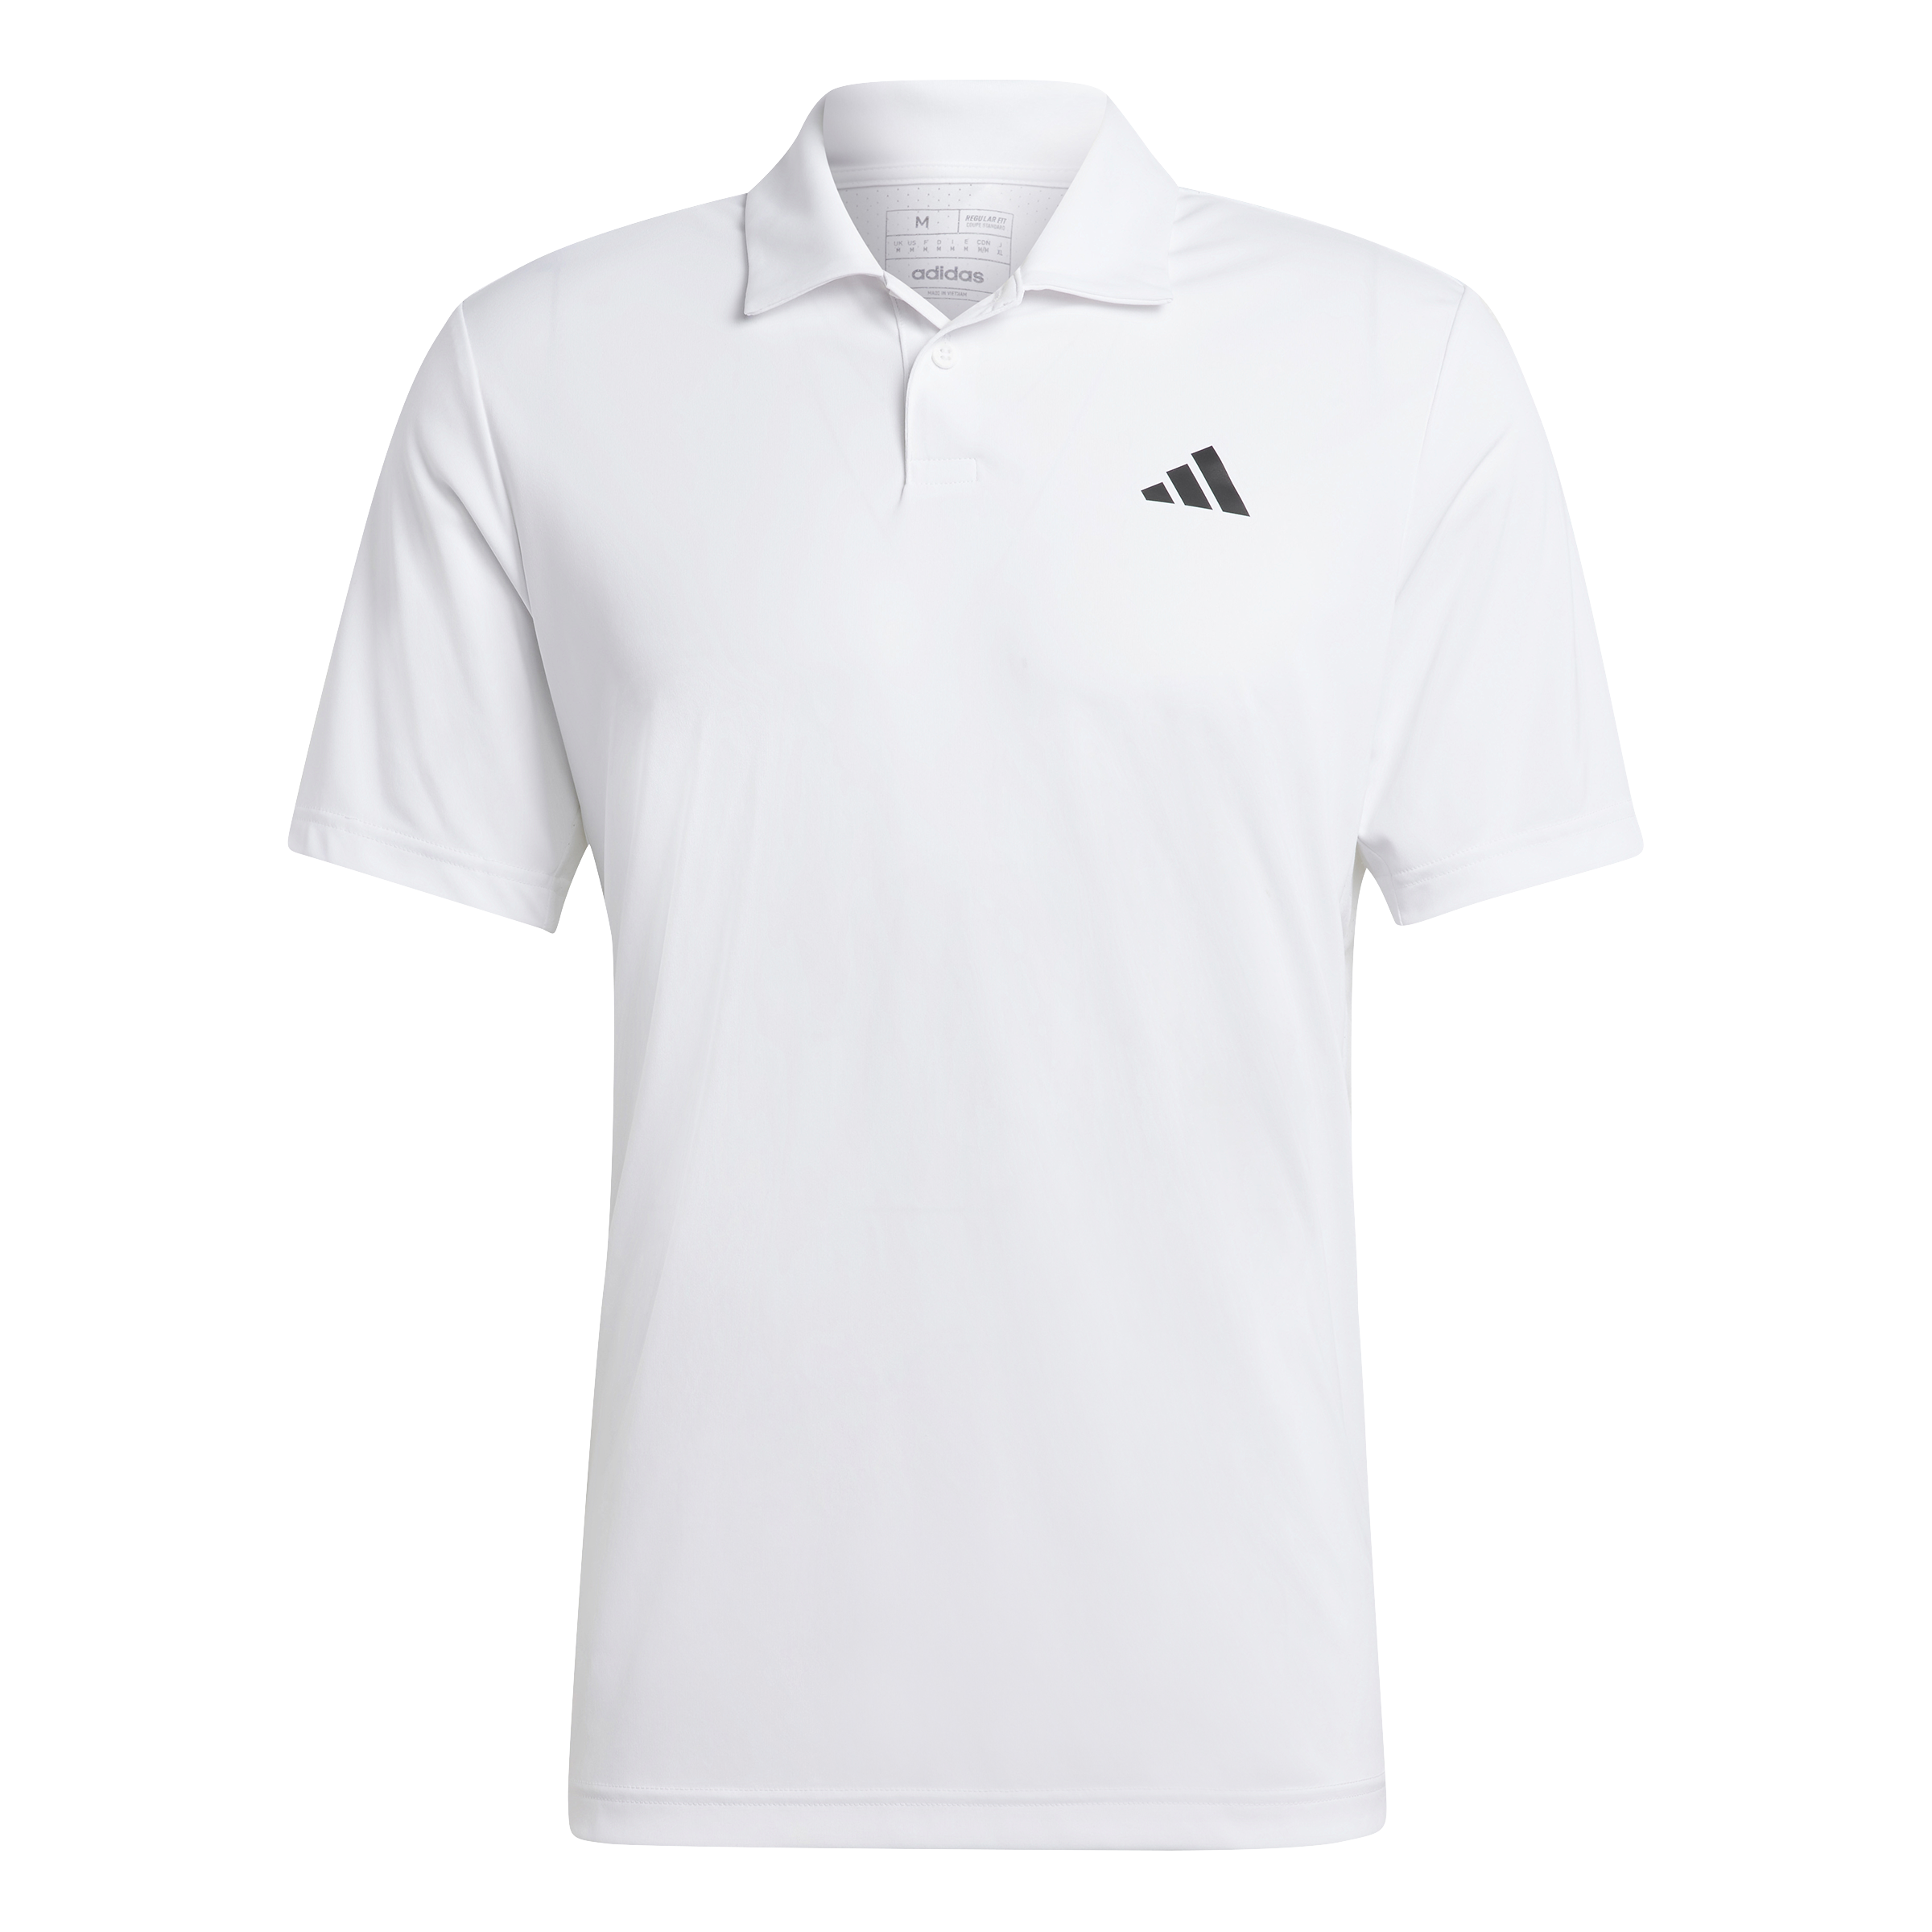 Adidas Club Polo Shirt (White) - L